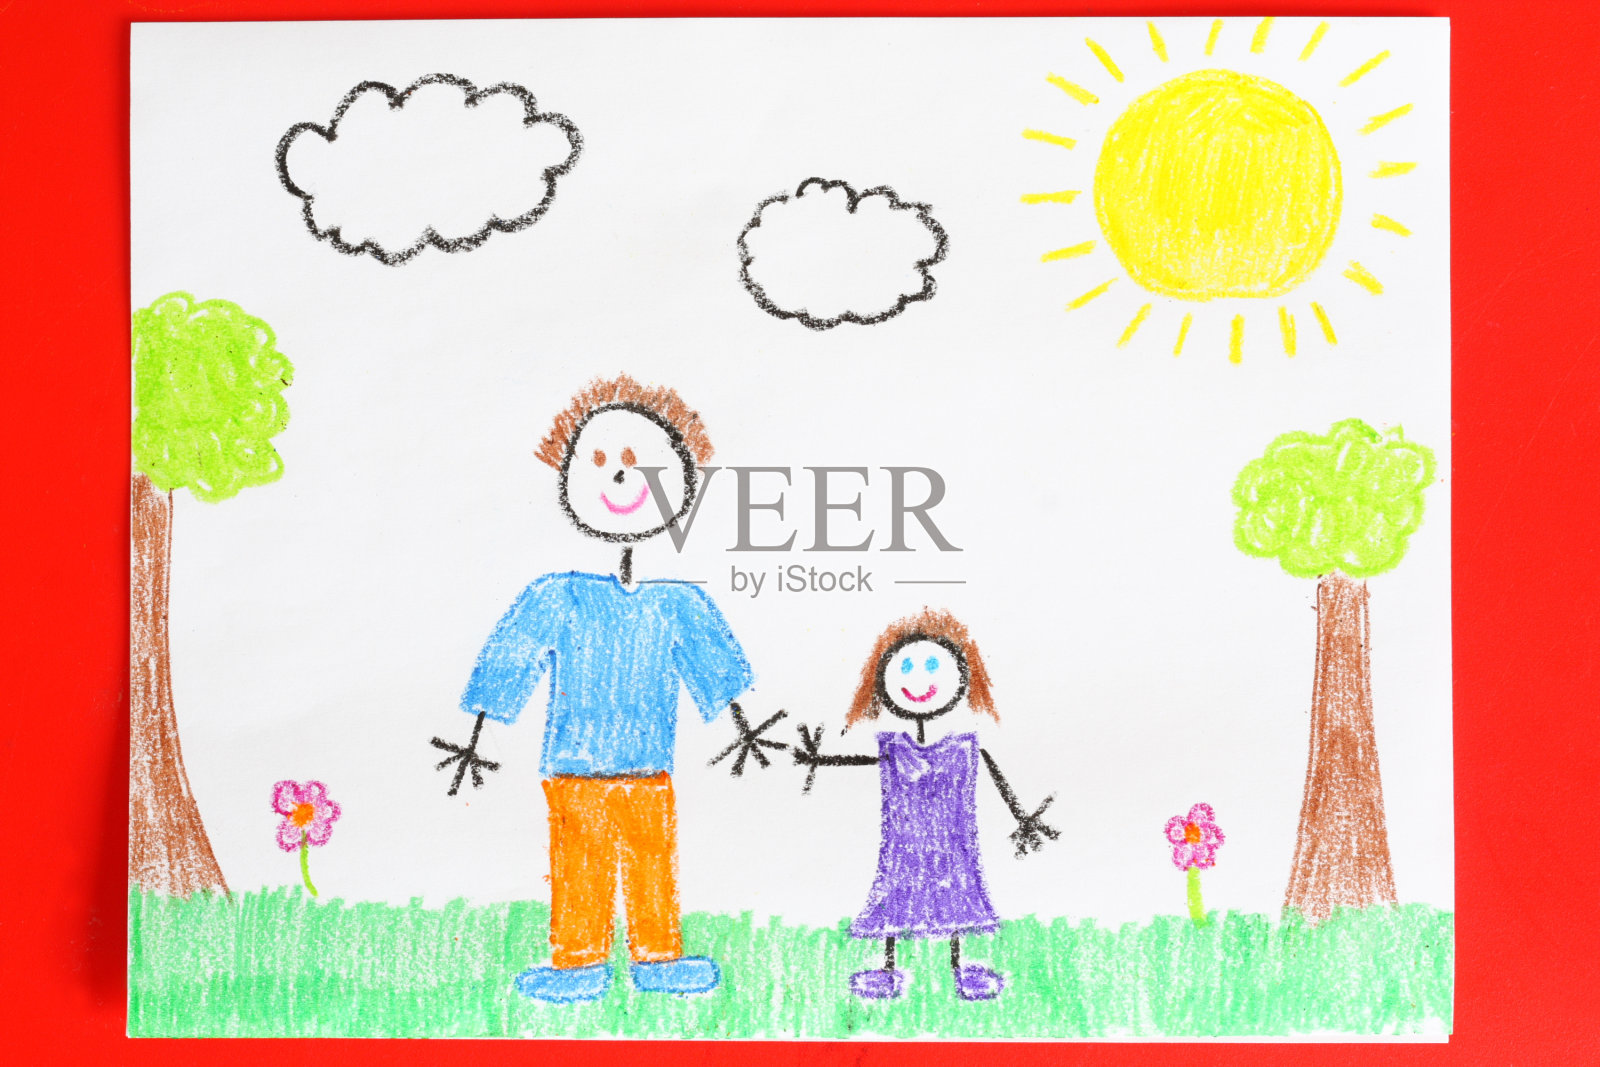 父母和女儿插画图片素材_ID:306802771-Veer图库